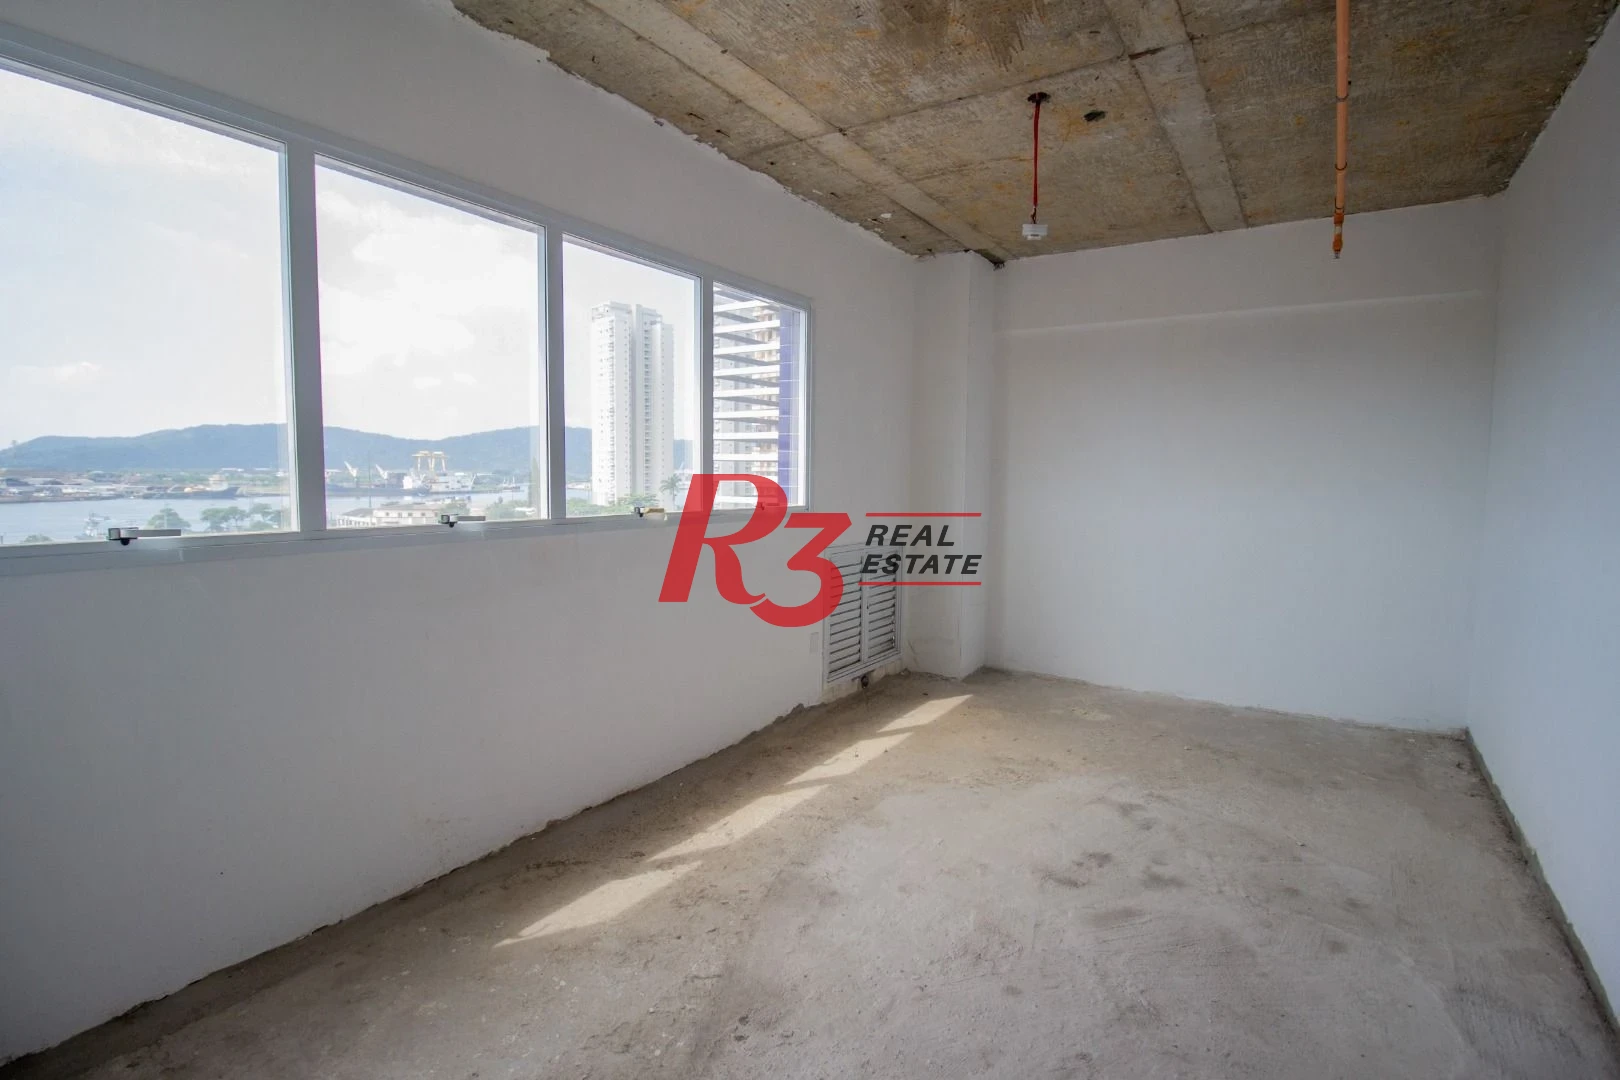 Sala à venda, 35 m² por R$ 332.690,00 - Ponta da Praia - Santos/SP